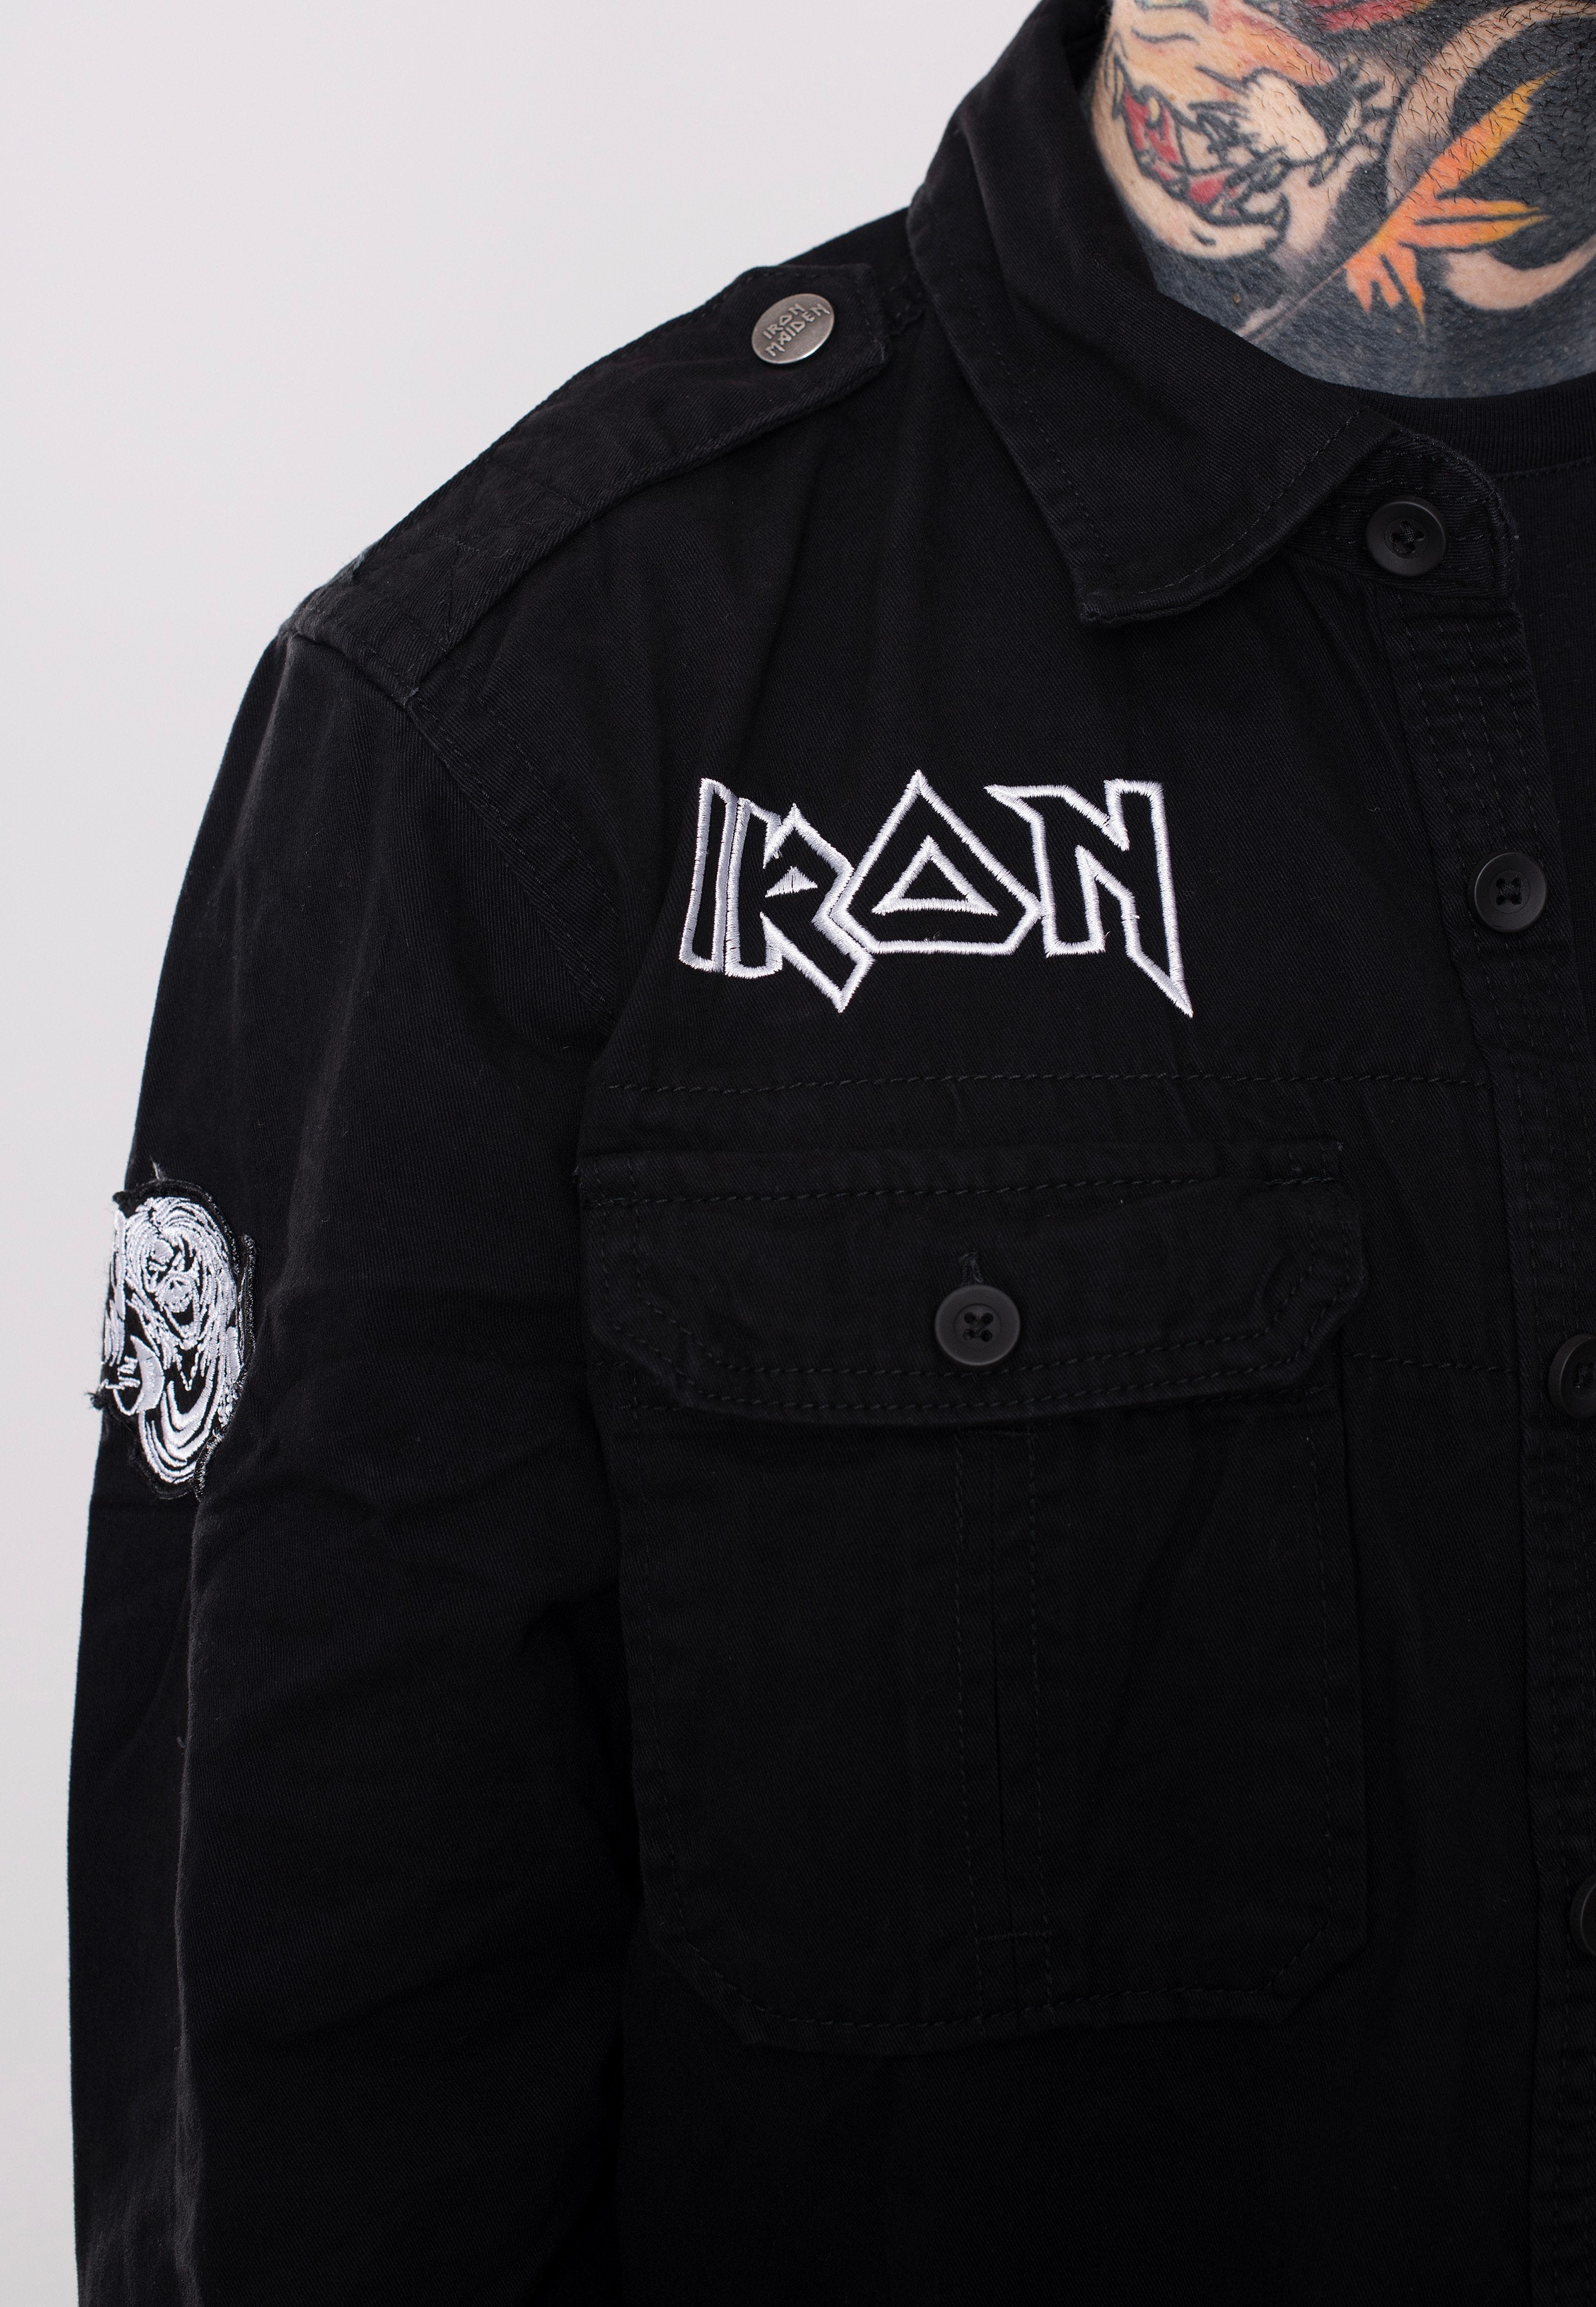 Iron Maiden - Eddie - Shirt